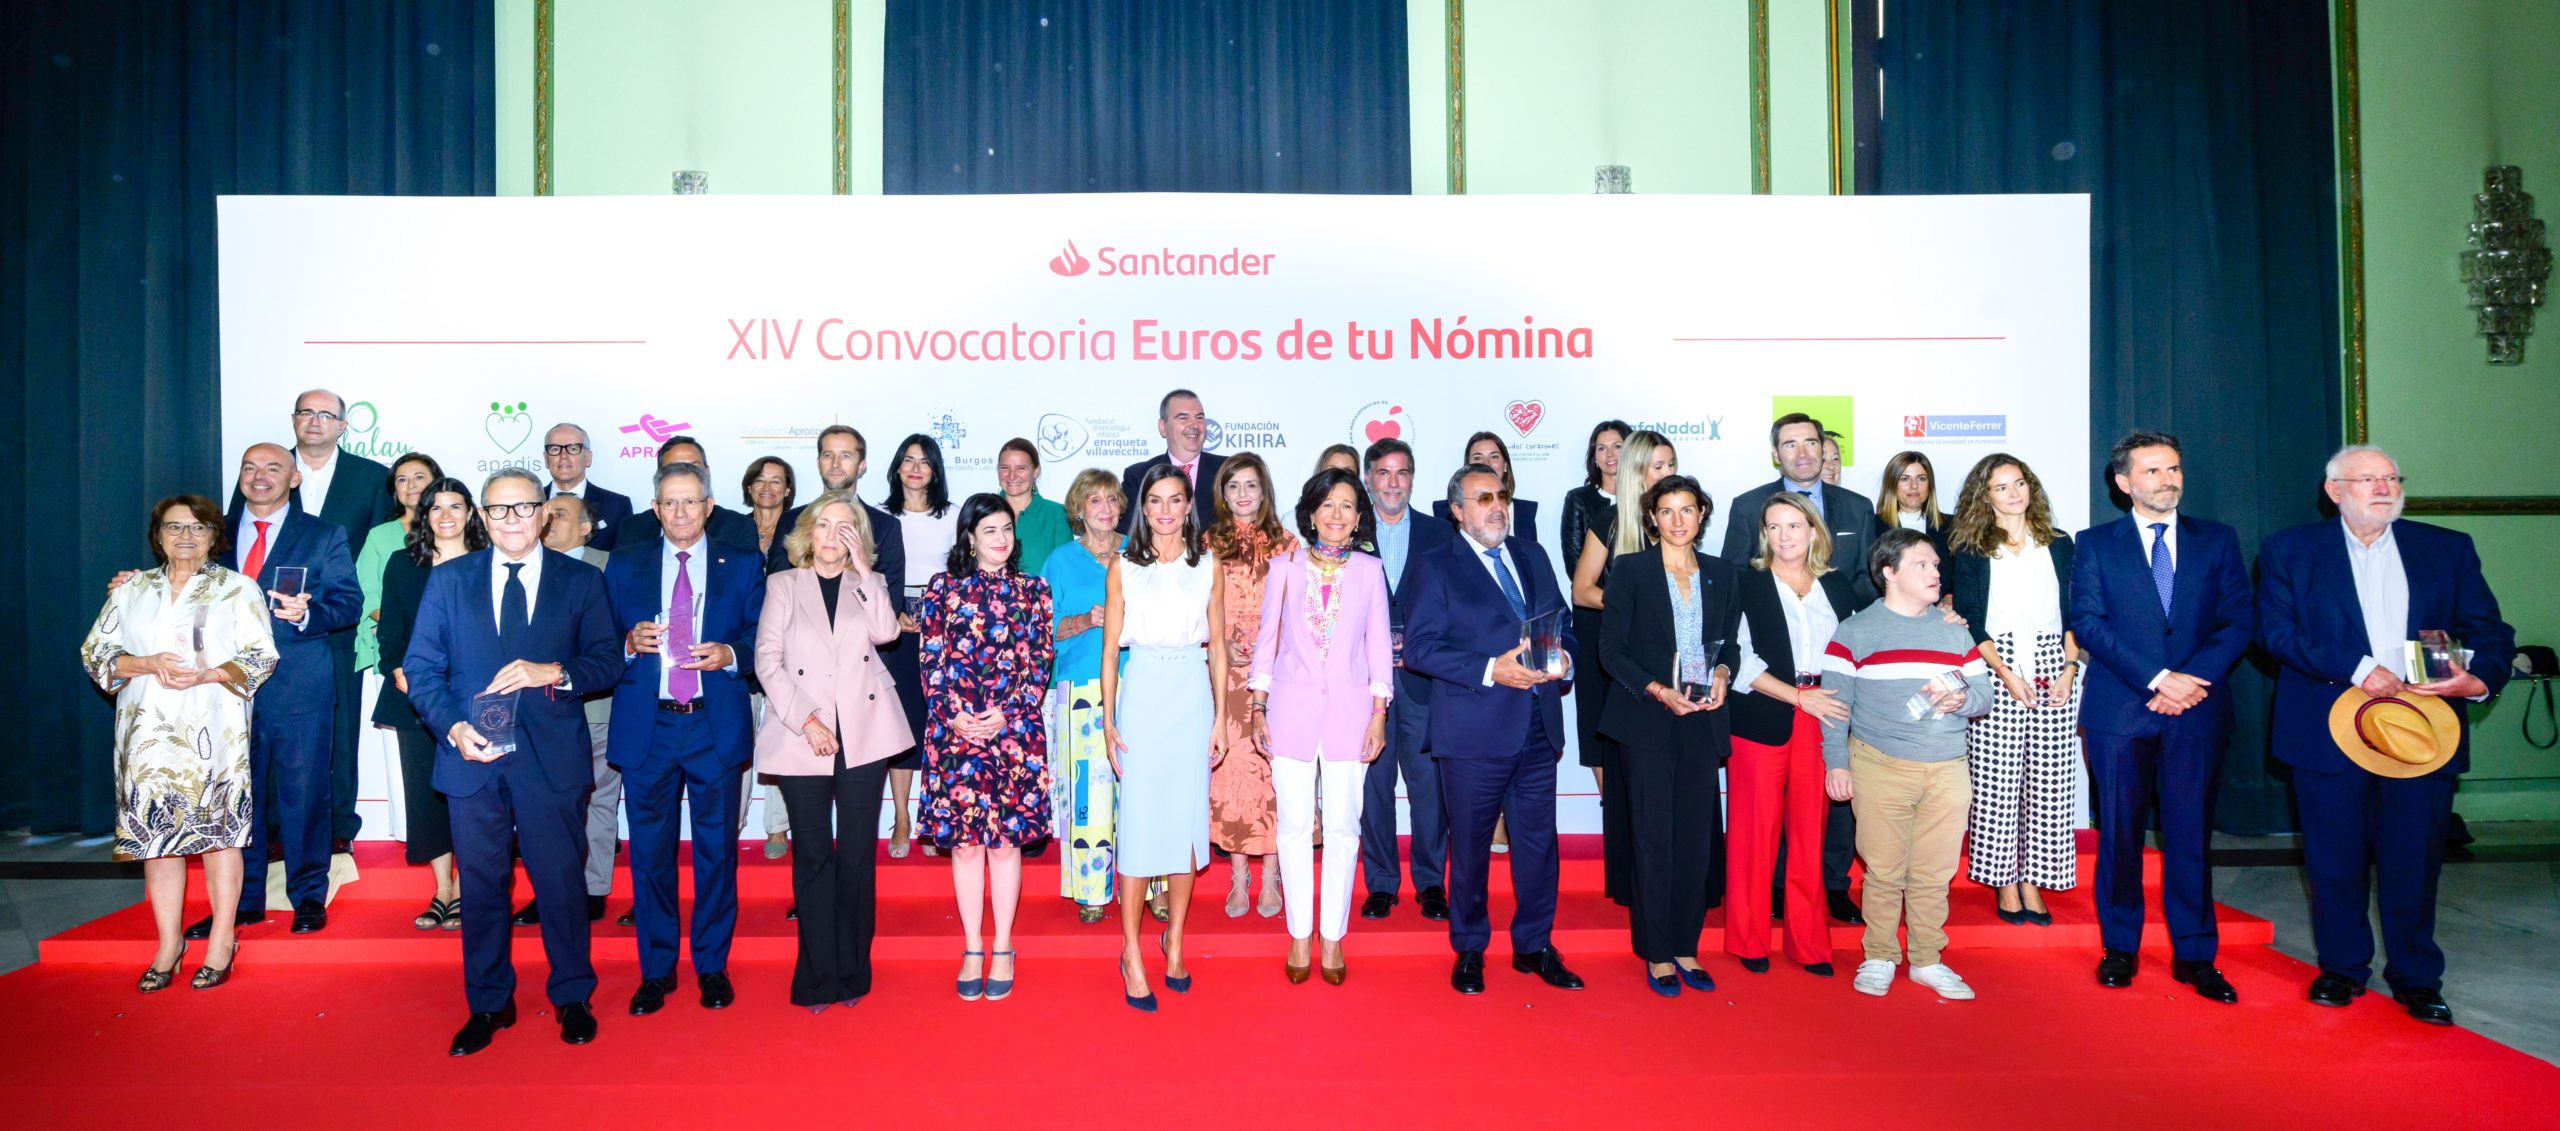 La Reina Letizia y Ana Botín presiden la ceremonia de entrega de premios de la XIV Convocatoria “Euros de tu Nómina” de Banco Santander